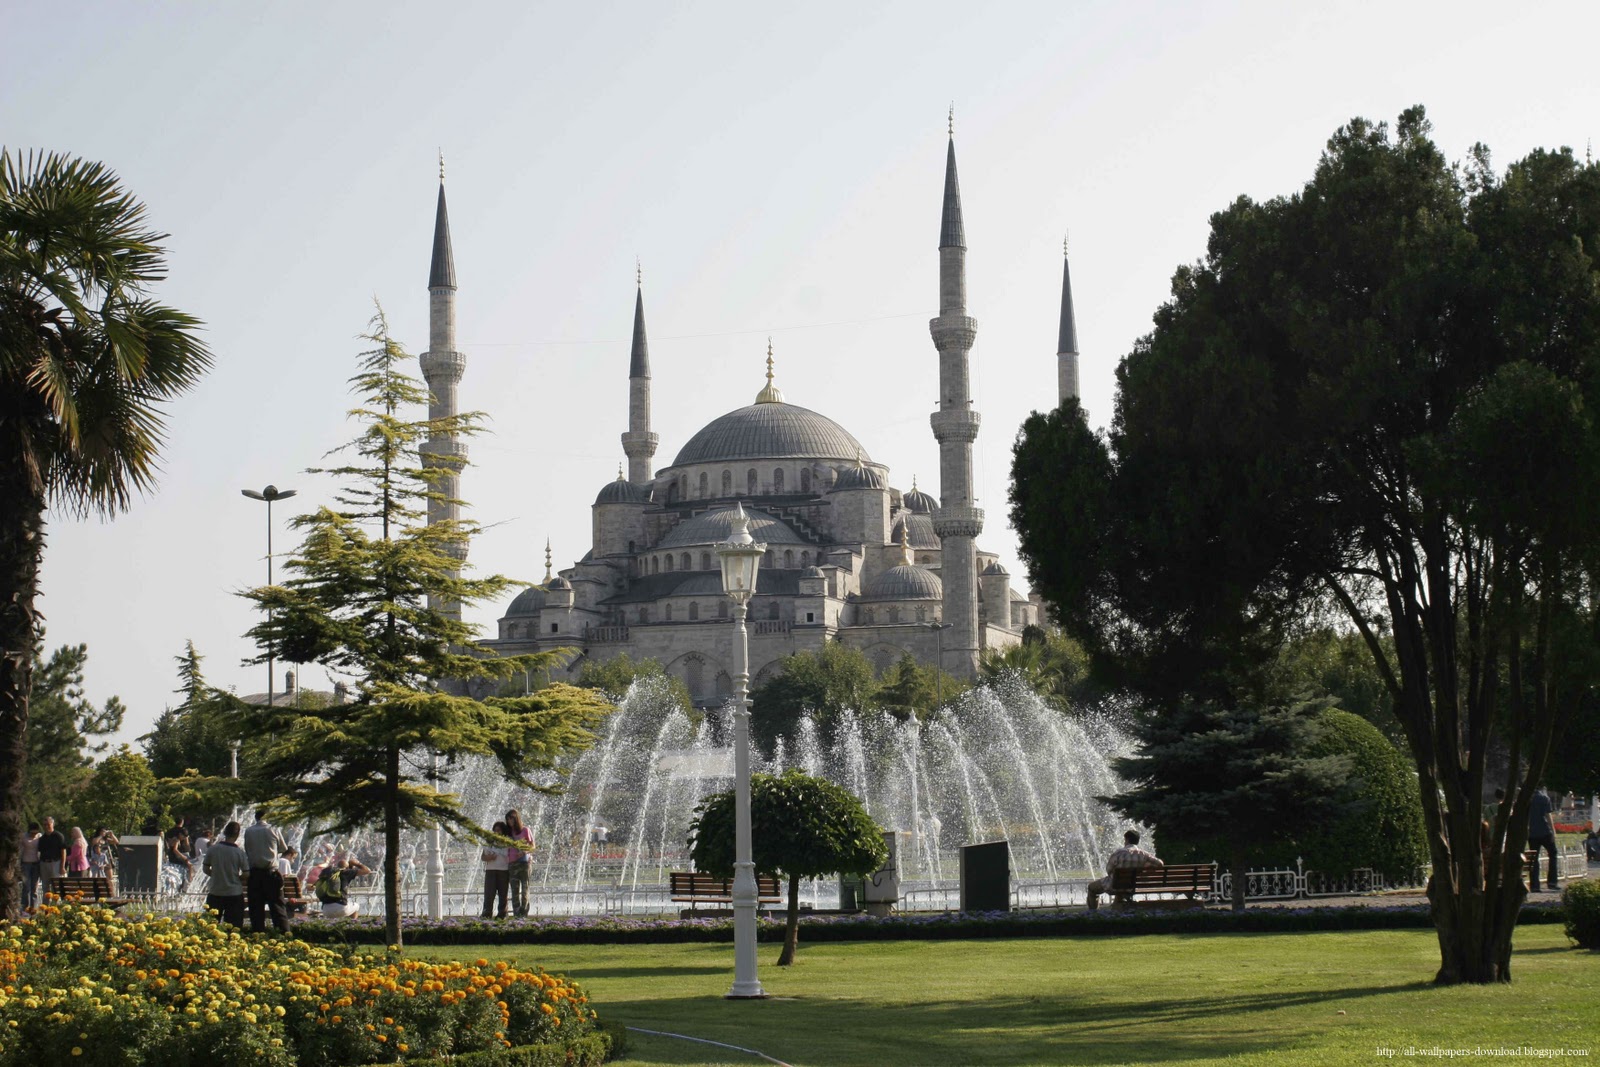 https://blogger.googleusercontent.com/img/b/R29vZ2xl/AVvXsEhZ2YJutIFjDT93HlXQu4DcrG0QaMcn5U6T3CWNIhzFlR3r1tpaG8992JzrvbiCRFEKCn9wl4dsbfMrXZ3NfFnd0OGwkxjBKxT4JLL87FAp2y2is77TK5PF2dEDQVfLdkDCIRg-hu-TjWBy/s1600/Blue%20mosque-Istanbul%20(2).jpg